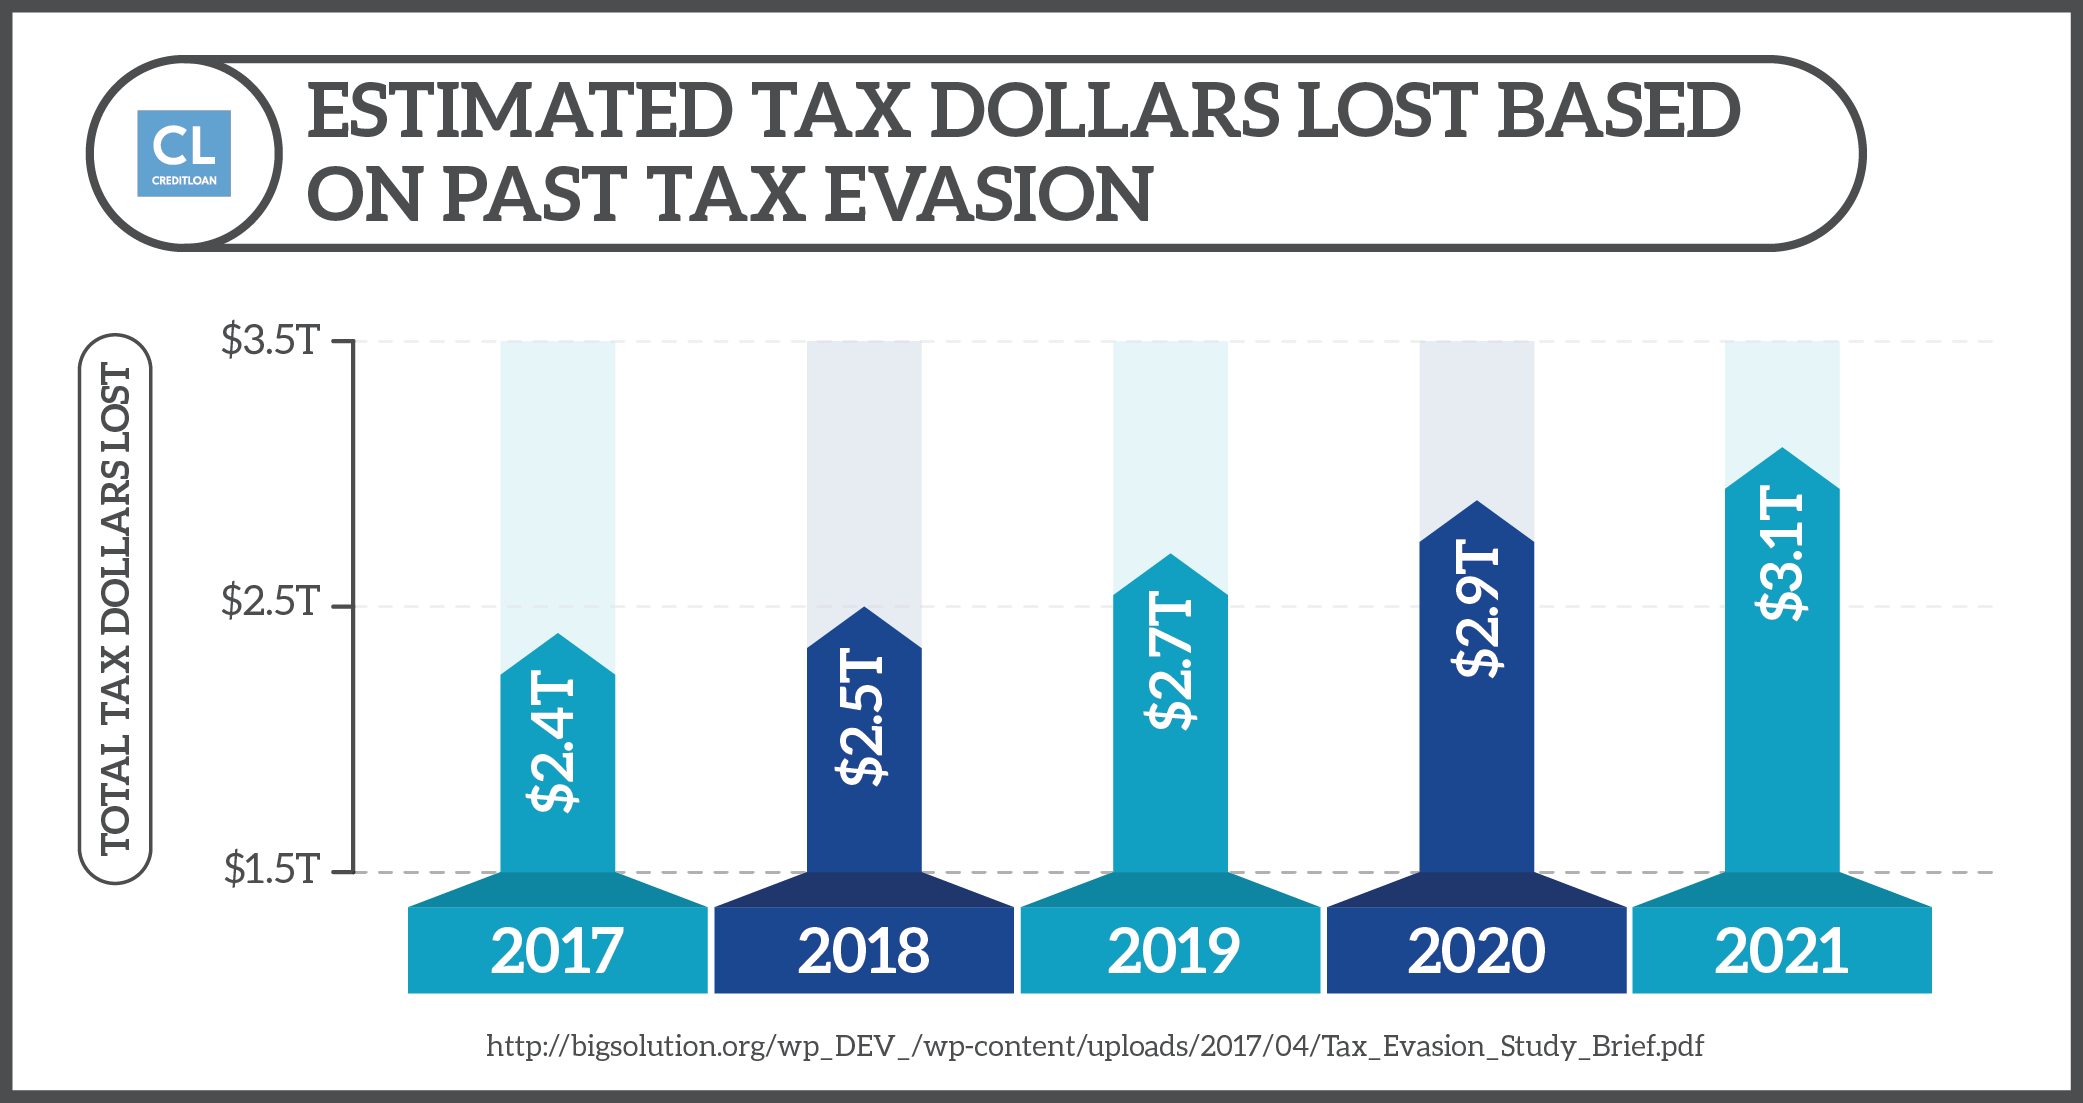 Estimated Tax Dollars Lost Based on Past Tax Evasion 2017-2021